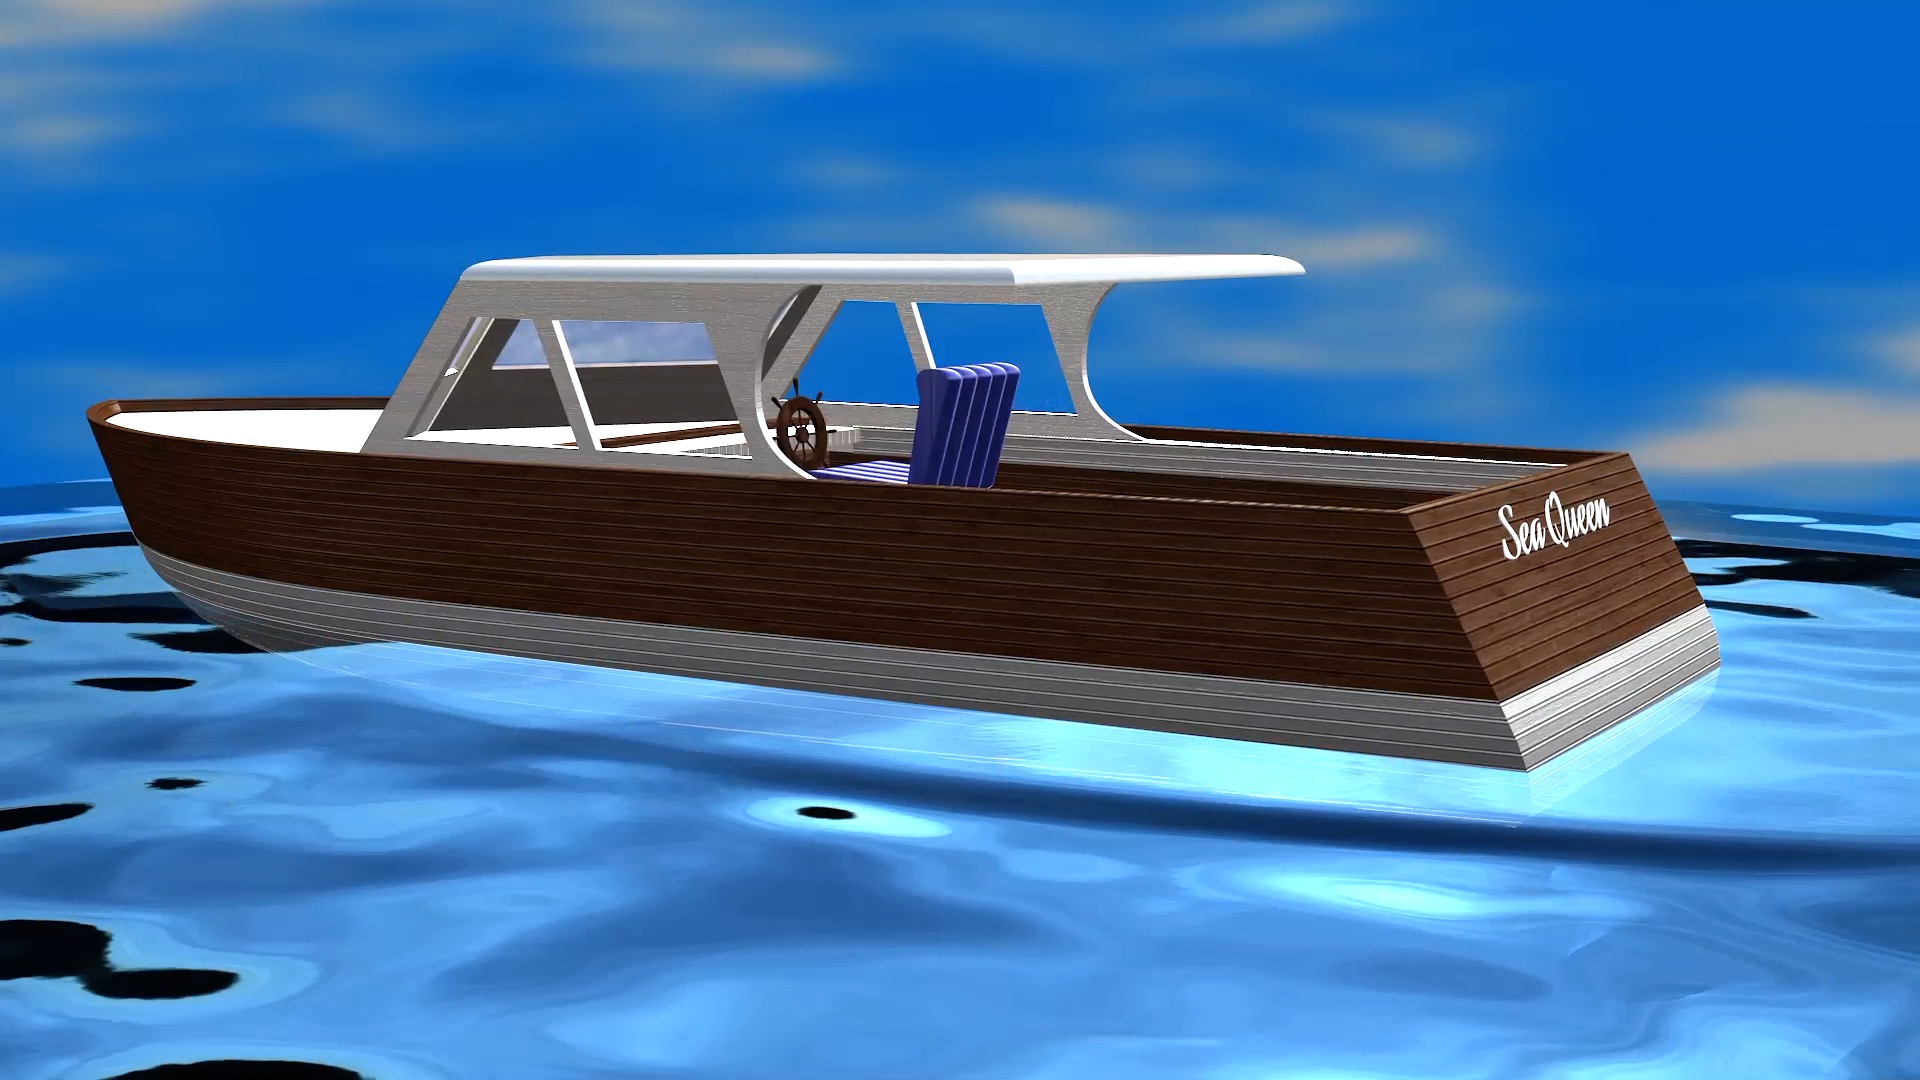 3D Model boat - Sea Queen - Portfolio entry